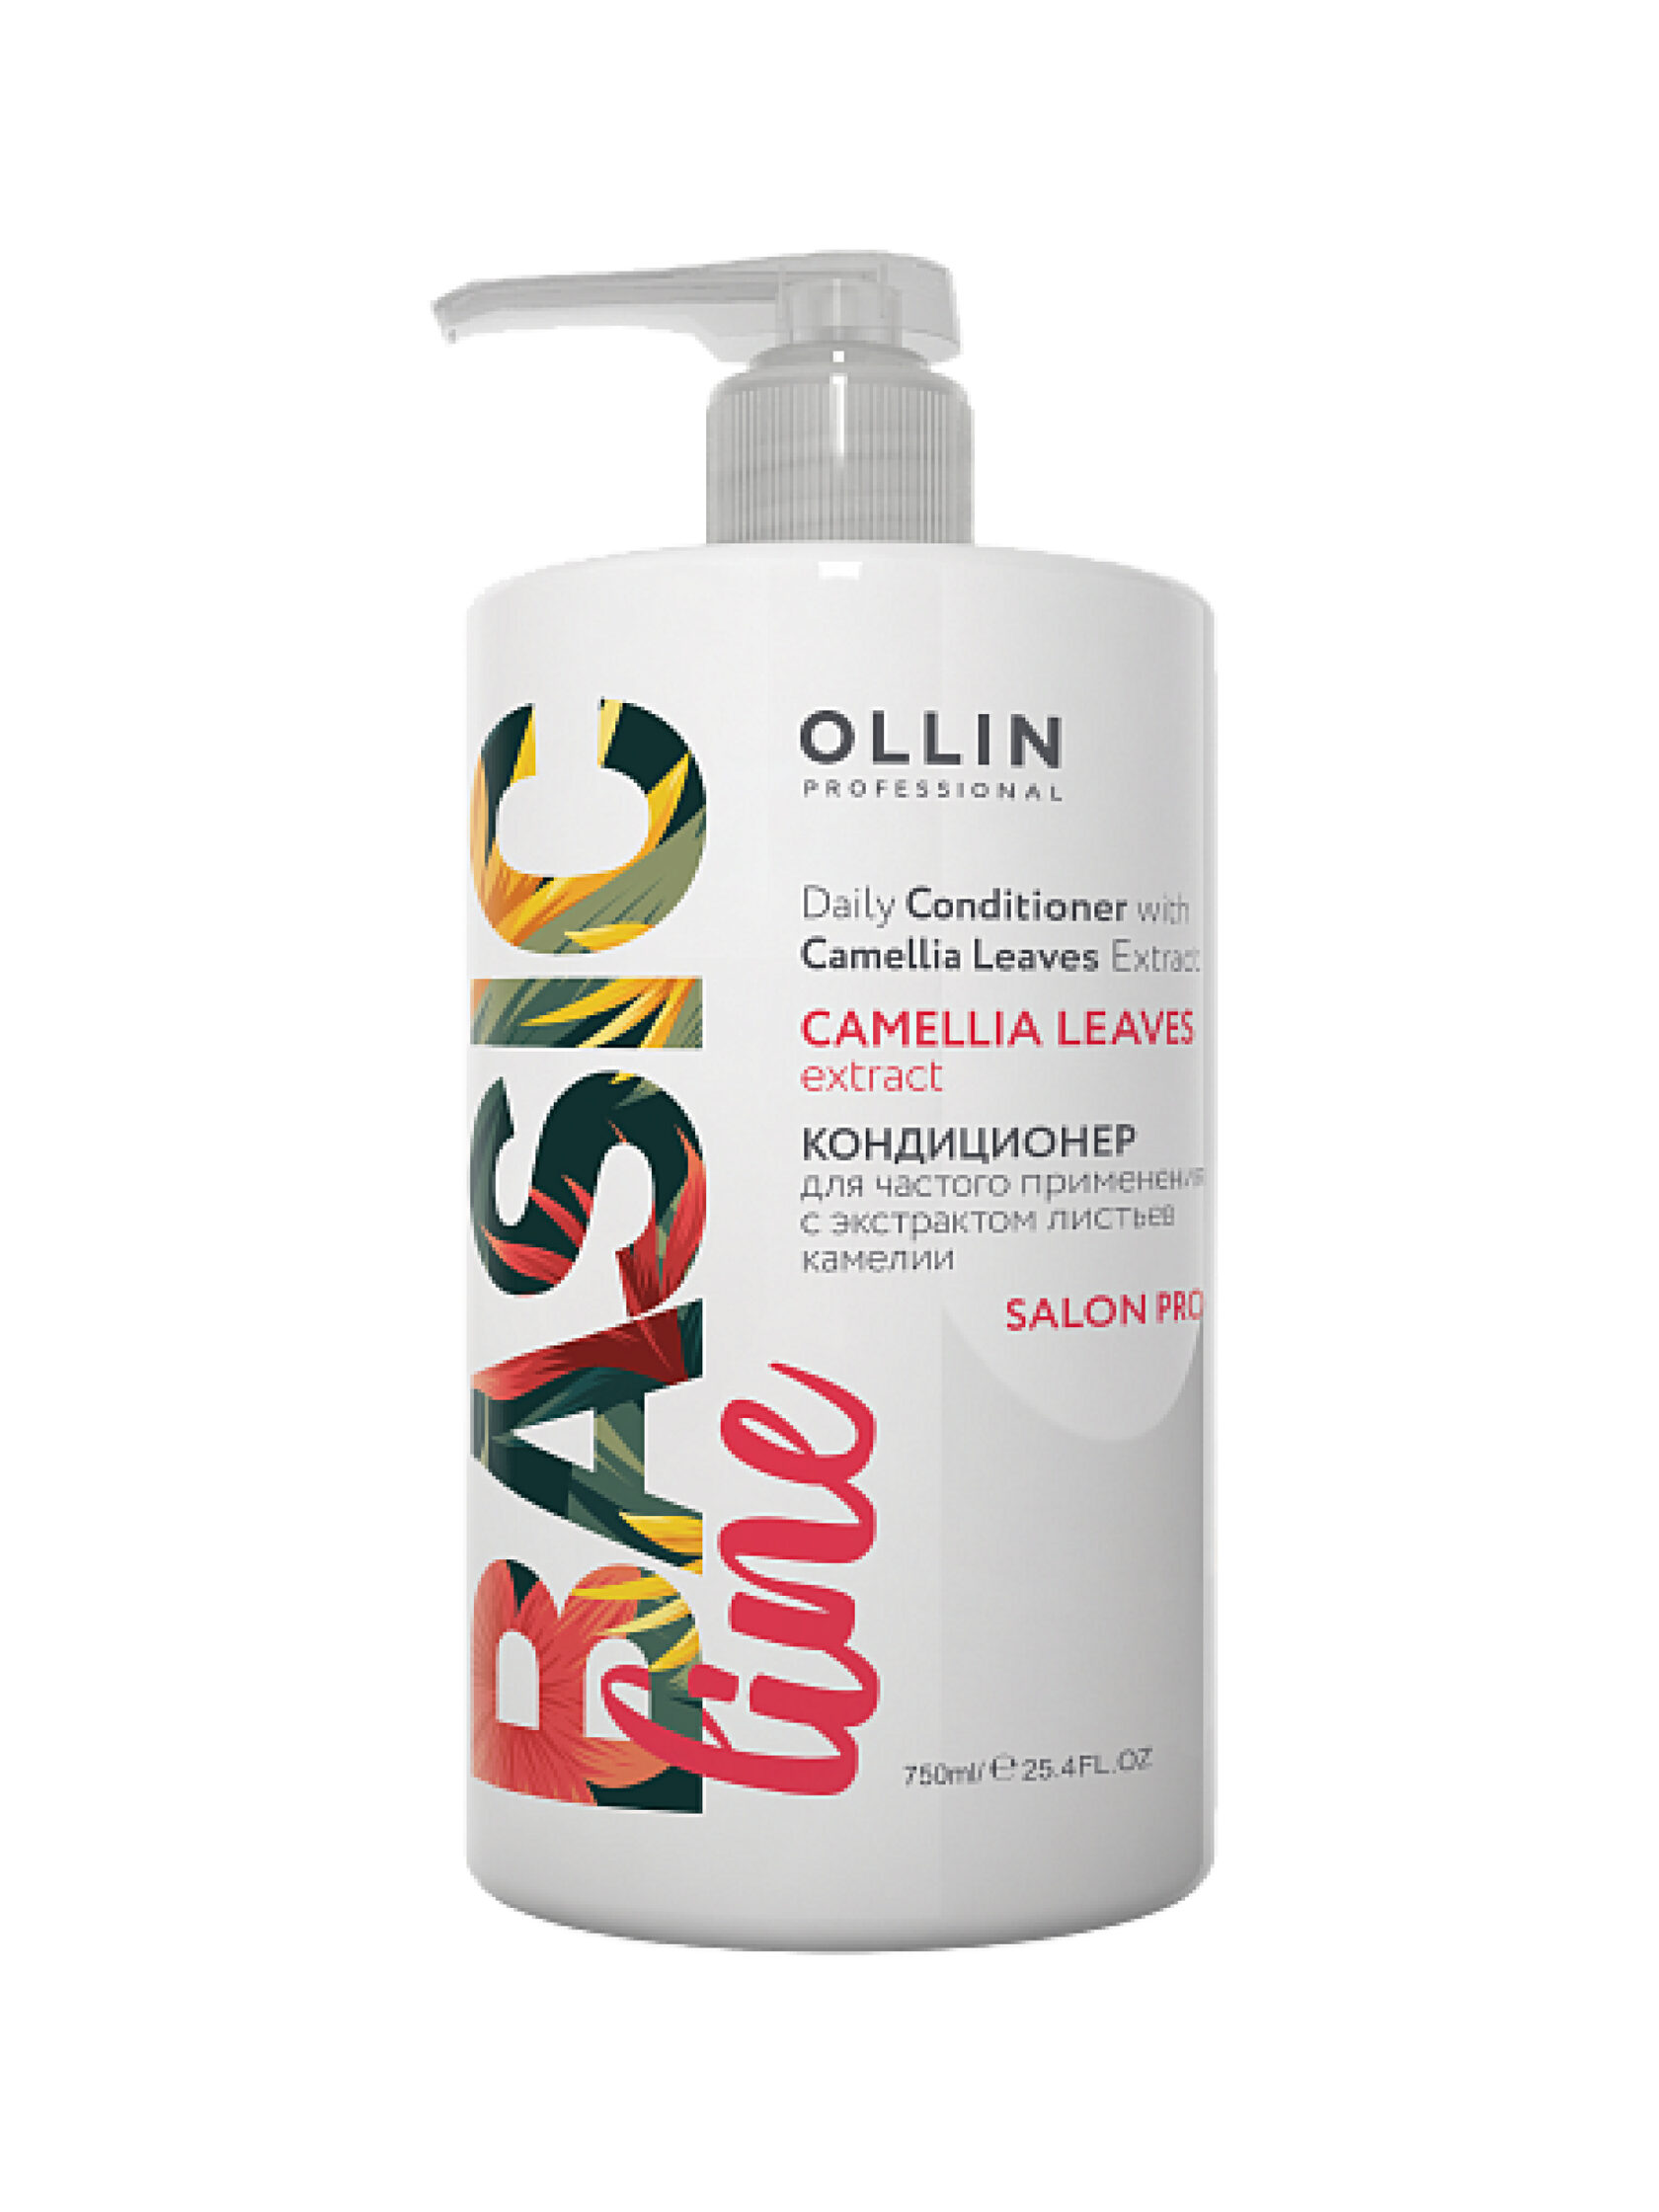 Кондиционер Ollin Professional для частого применения с экстрактом листьев камелии, 750мл кондиционер для облегчения расчесывания и распутывания волос для детей от года lgkcr6 180 мл